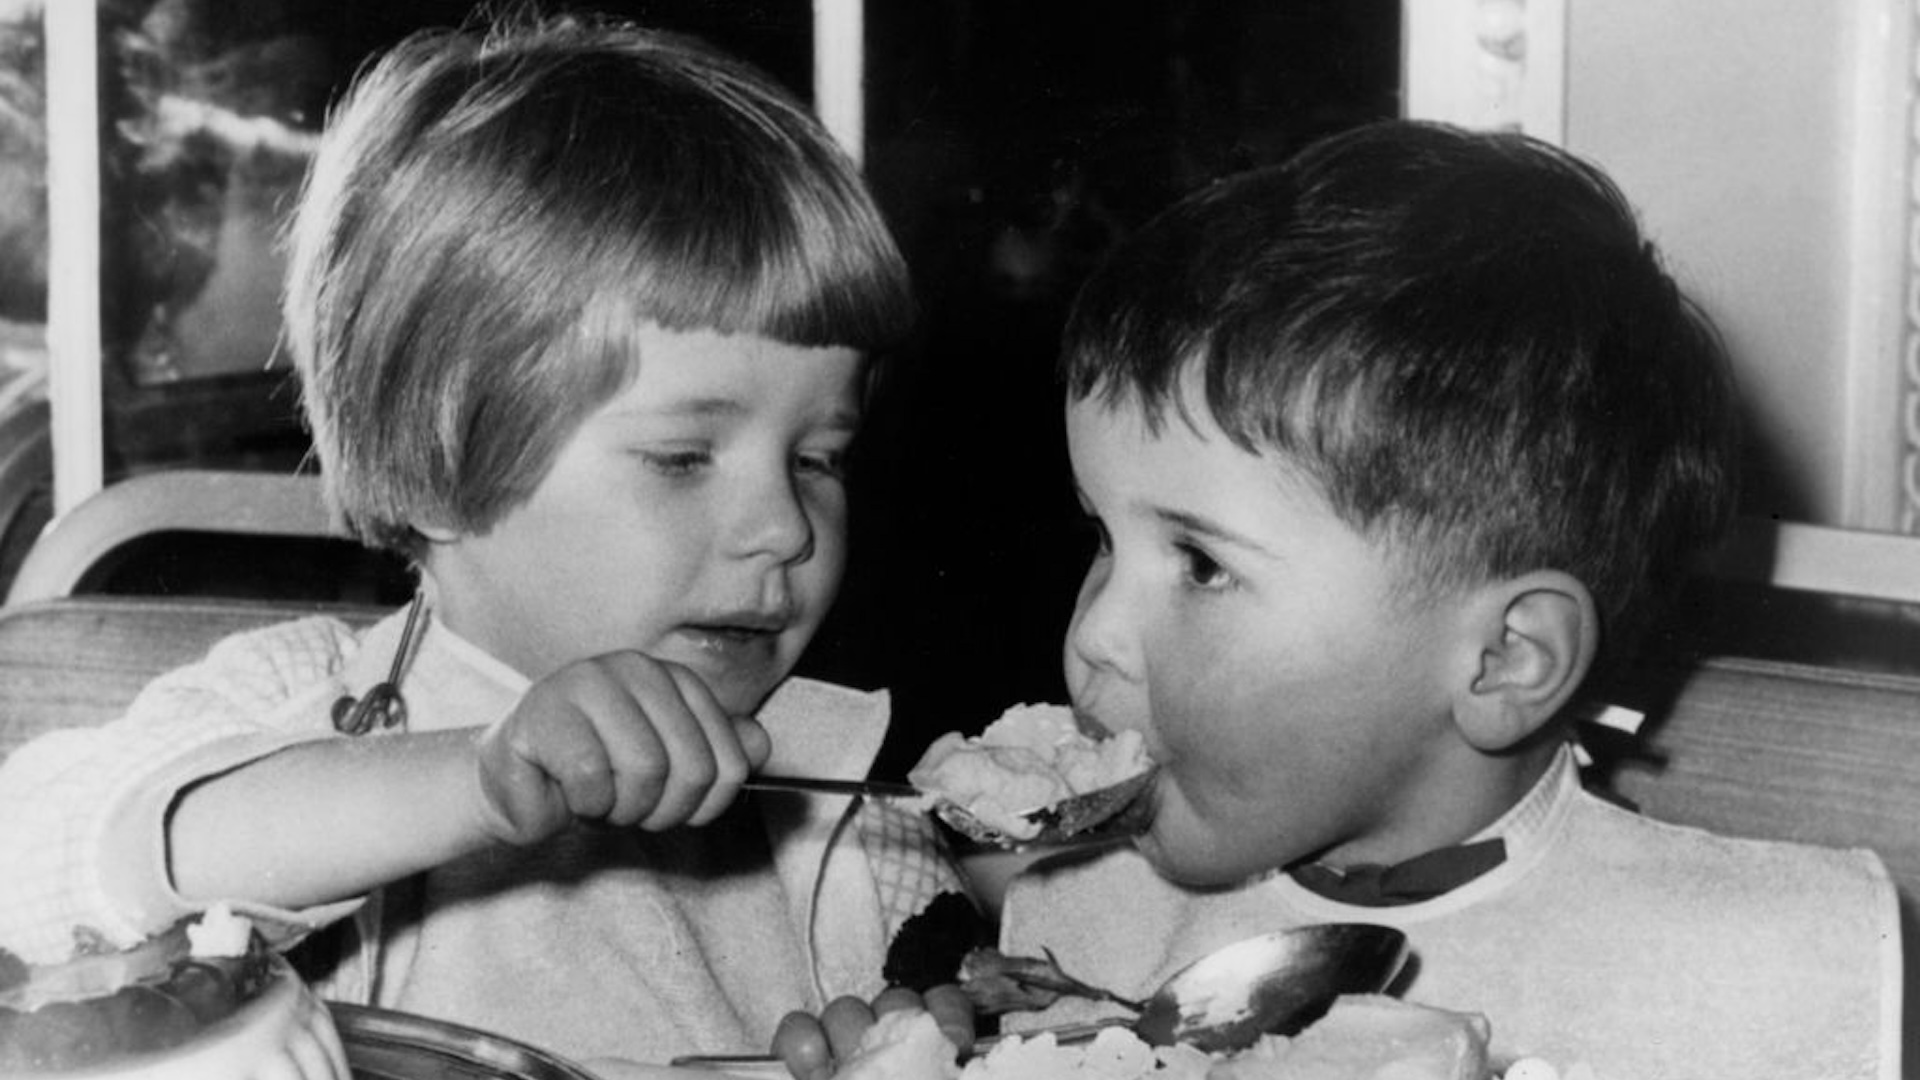 Two small children eating dessert.